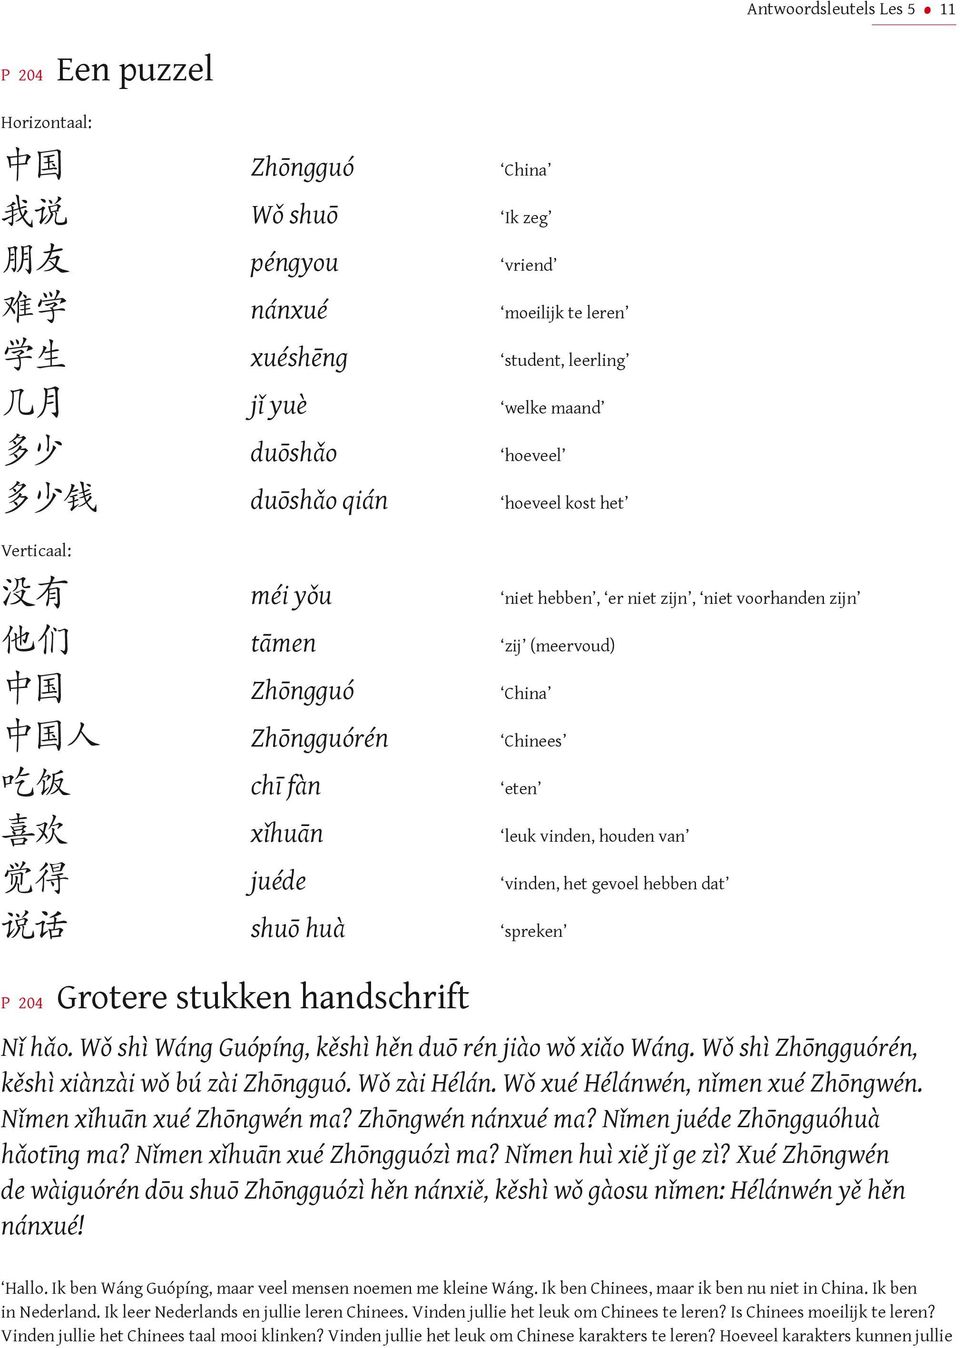 chī fàn eten 喜 欢 xǐhuān leuk vinden, houden van 觉 得 juéde vinden, het gevoel hebben dat 说 话 shuō huà spreken P 0 Grotere stukken handschrift Nǐ hǎo.